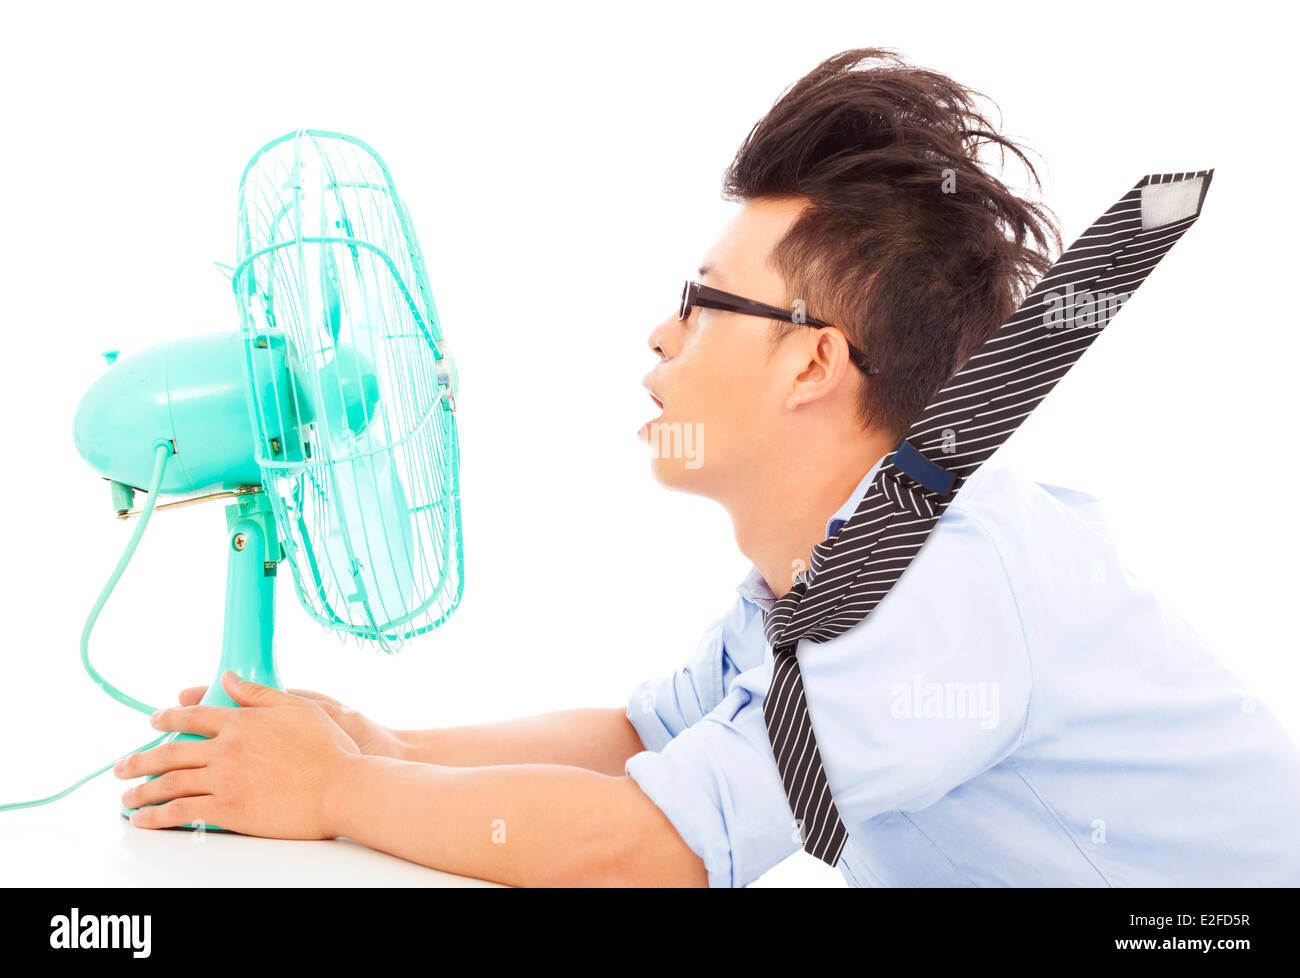 La chaleur de l'homme d'affaires, utilisez des ventilateurs pour refroidir Banque D'Images